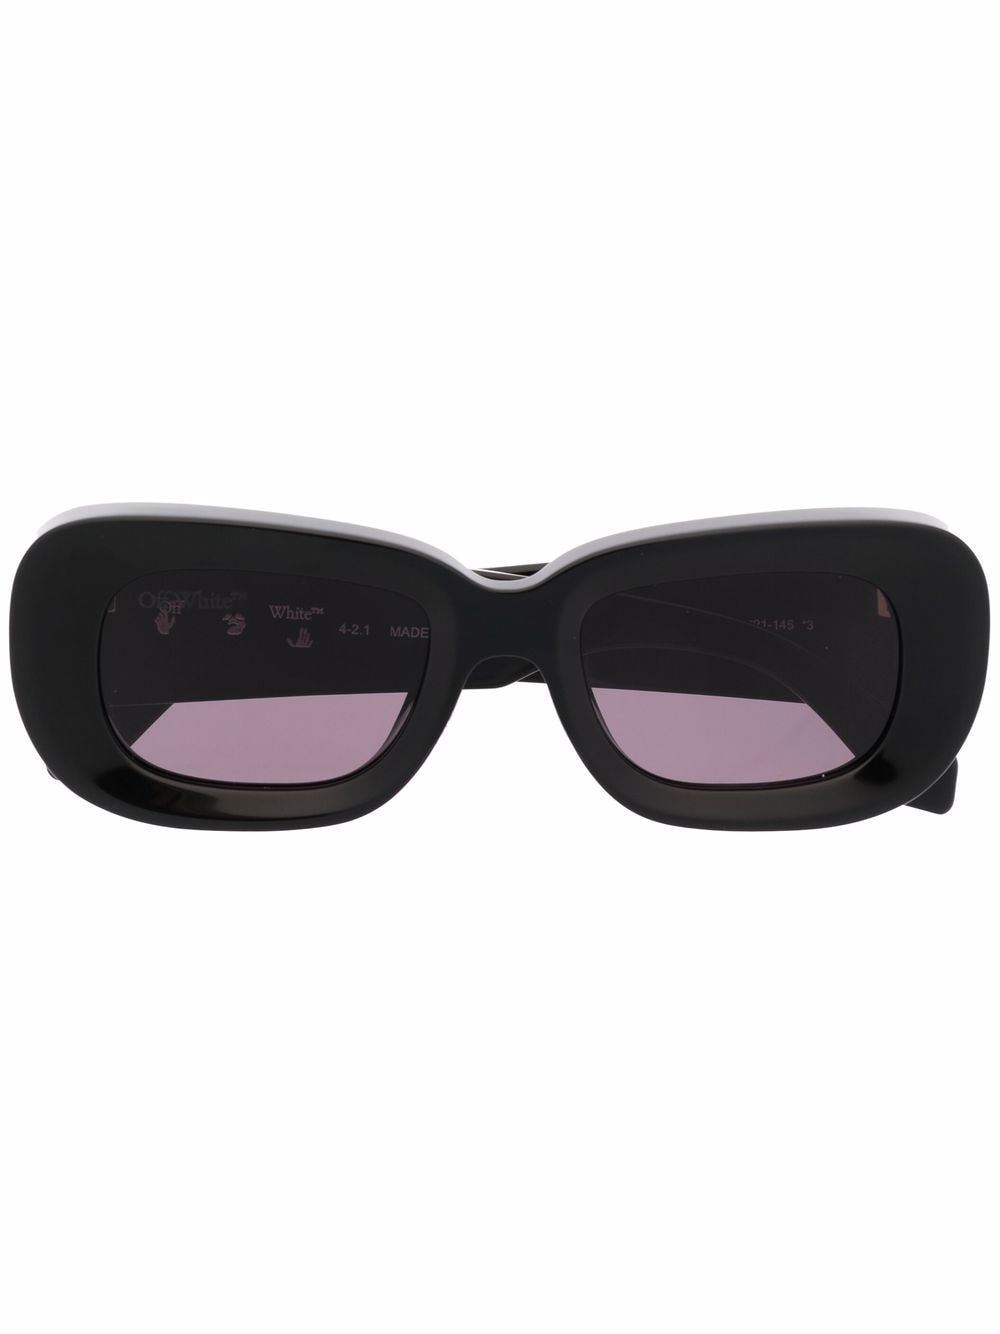 Off-White Carrara Rectangular Sunglasses (15cm) - Farfetch